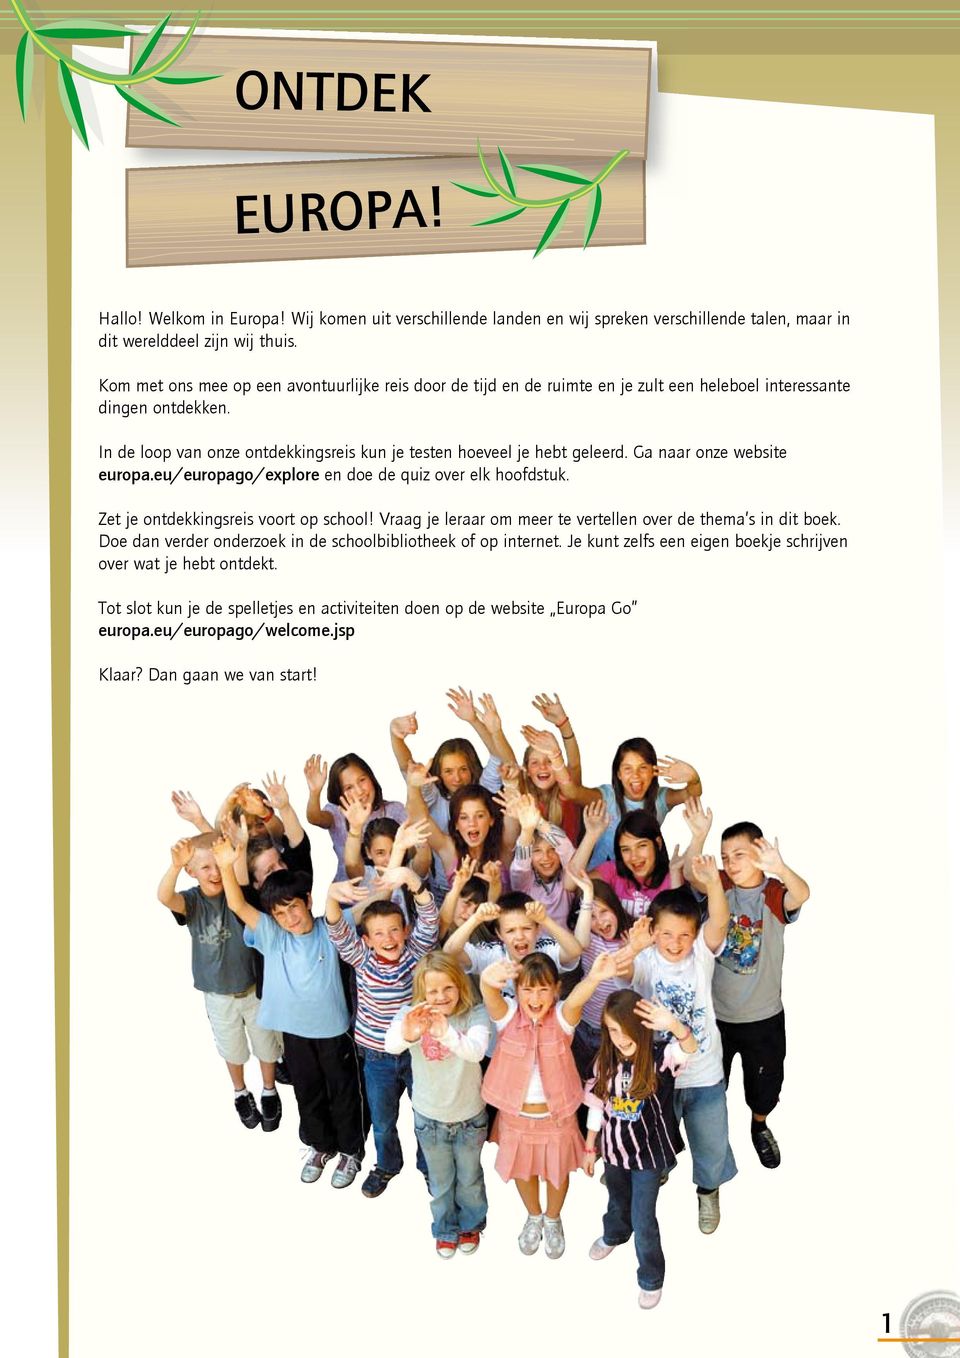 Ga naar onze website europa.eu/europago/explore en doe de quiz over elk hoofdstuk. Zet je ontdekkingsreis voort op school! Vraag je leraar om meer te vertellen over de thema s in dit boek.